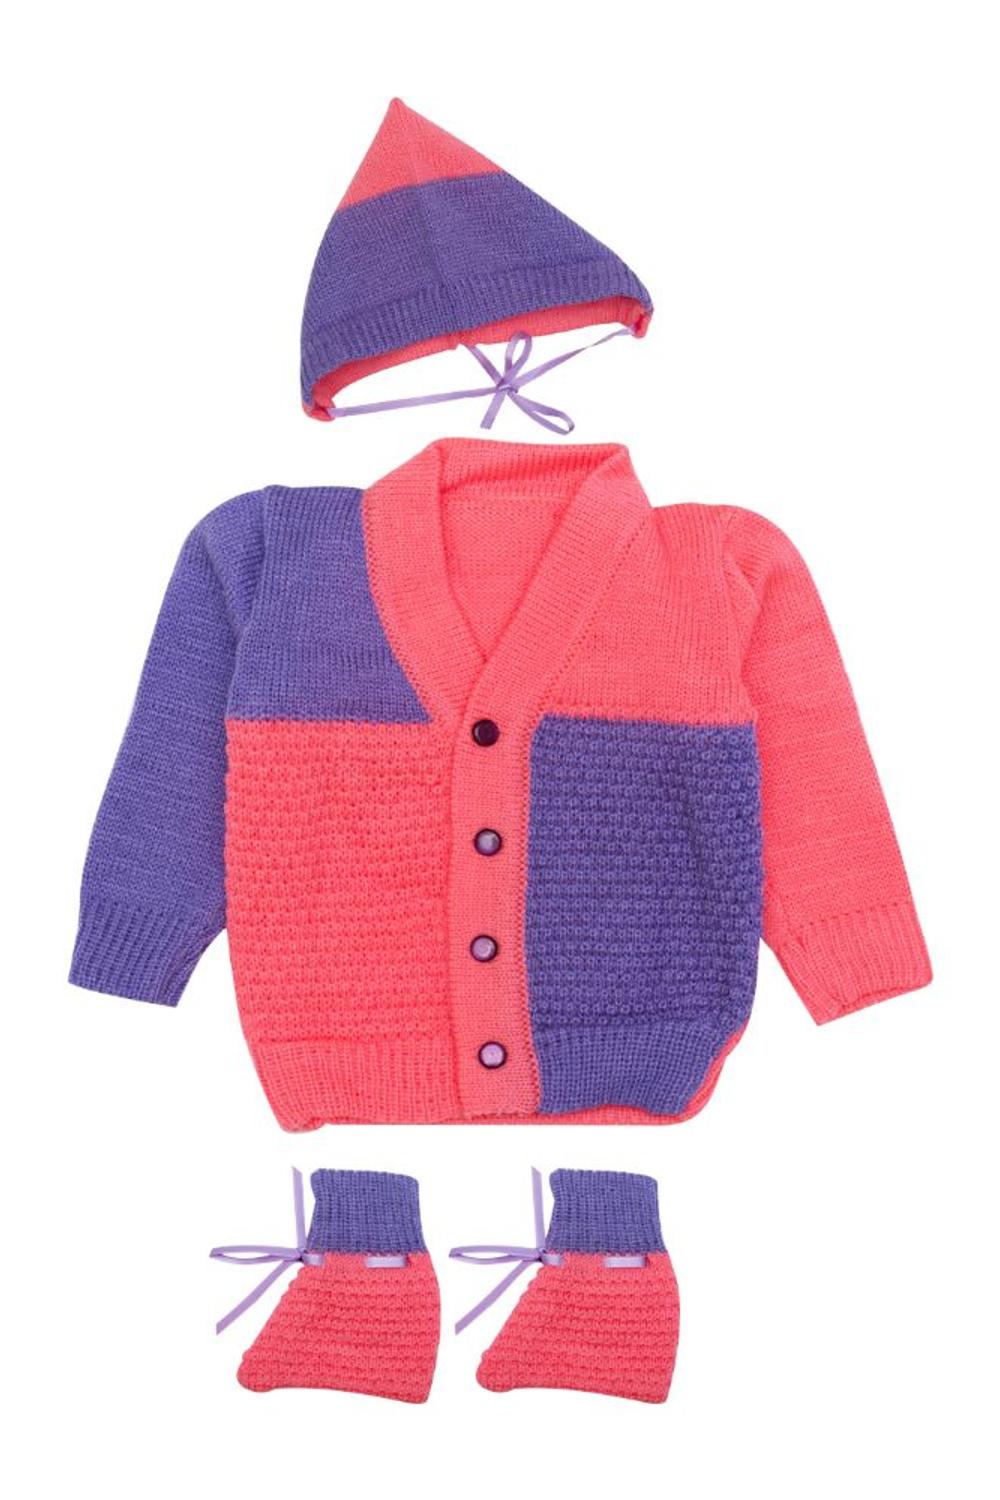 Mee Mee Full Sleeve Unisex Sweater Set (Fushcia, Lavender